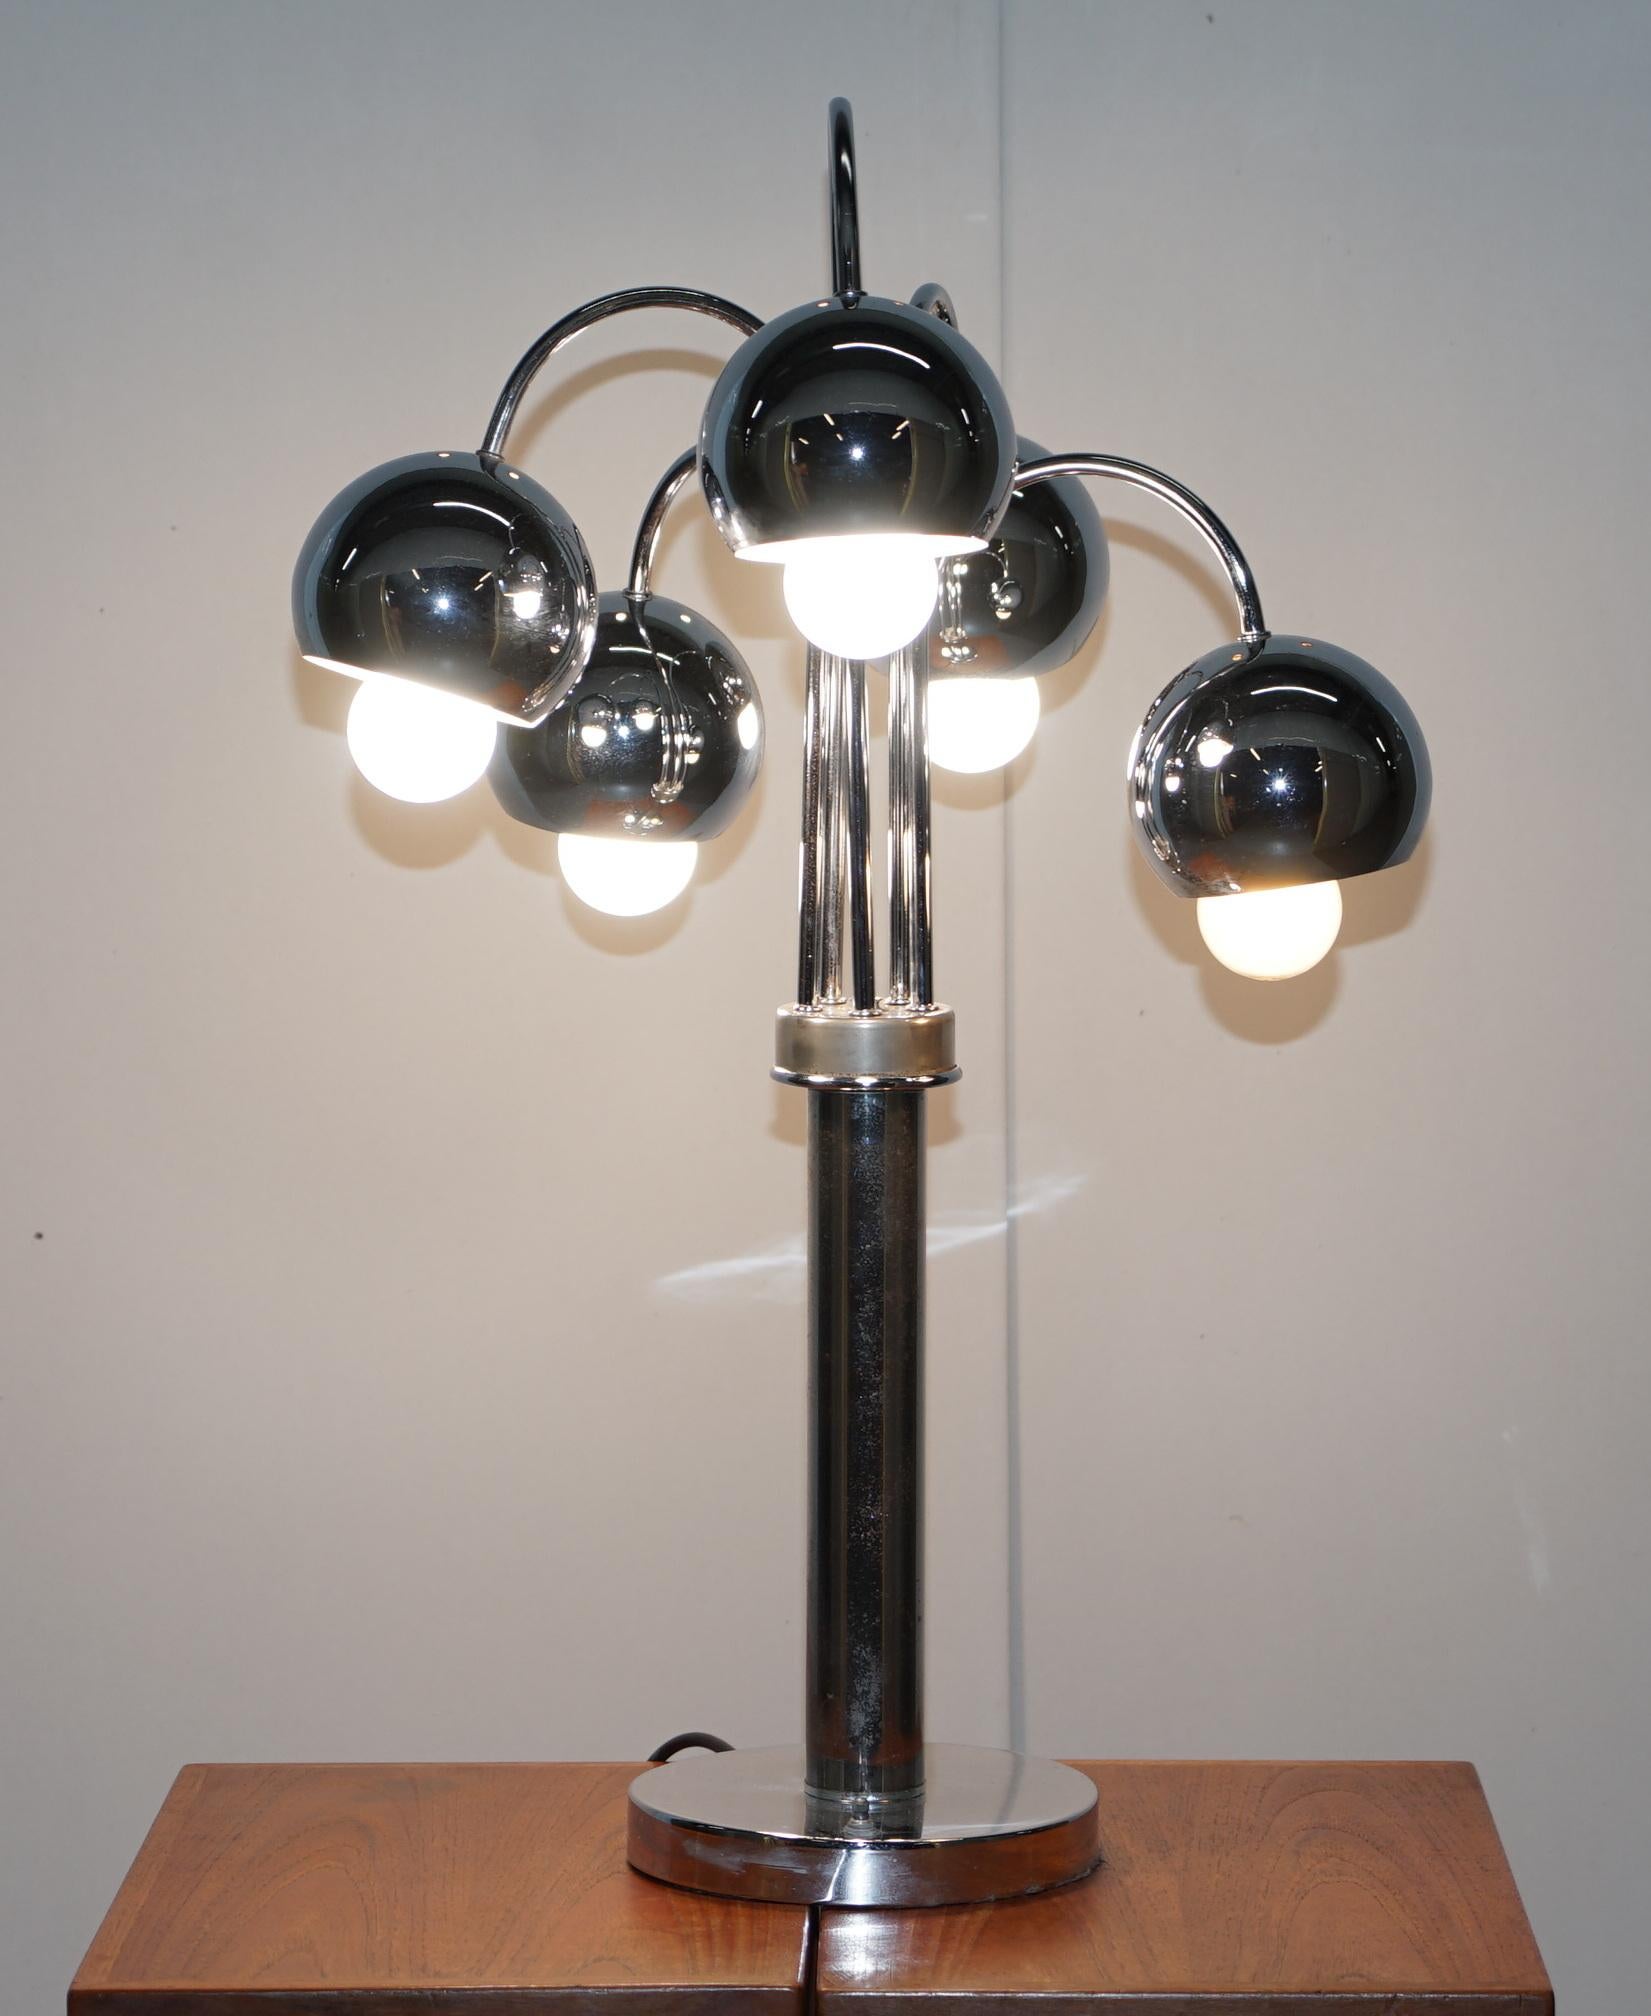 Nous sommes ravis de vous proposer cette paire de lampes de table chromées à cinq branches American Atomic très rétro, datant des années 1940 

Ces lampes diffusent une grande quantité de lumière car les ampoules sont légèrement en saillie par